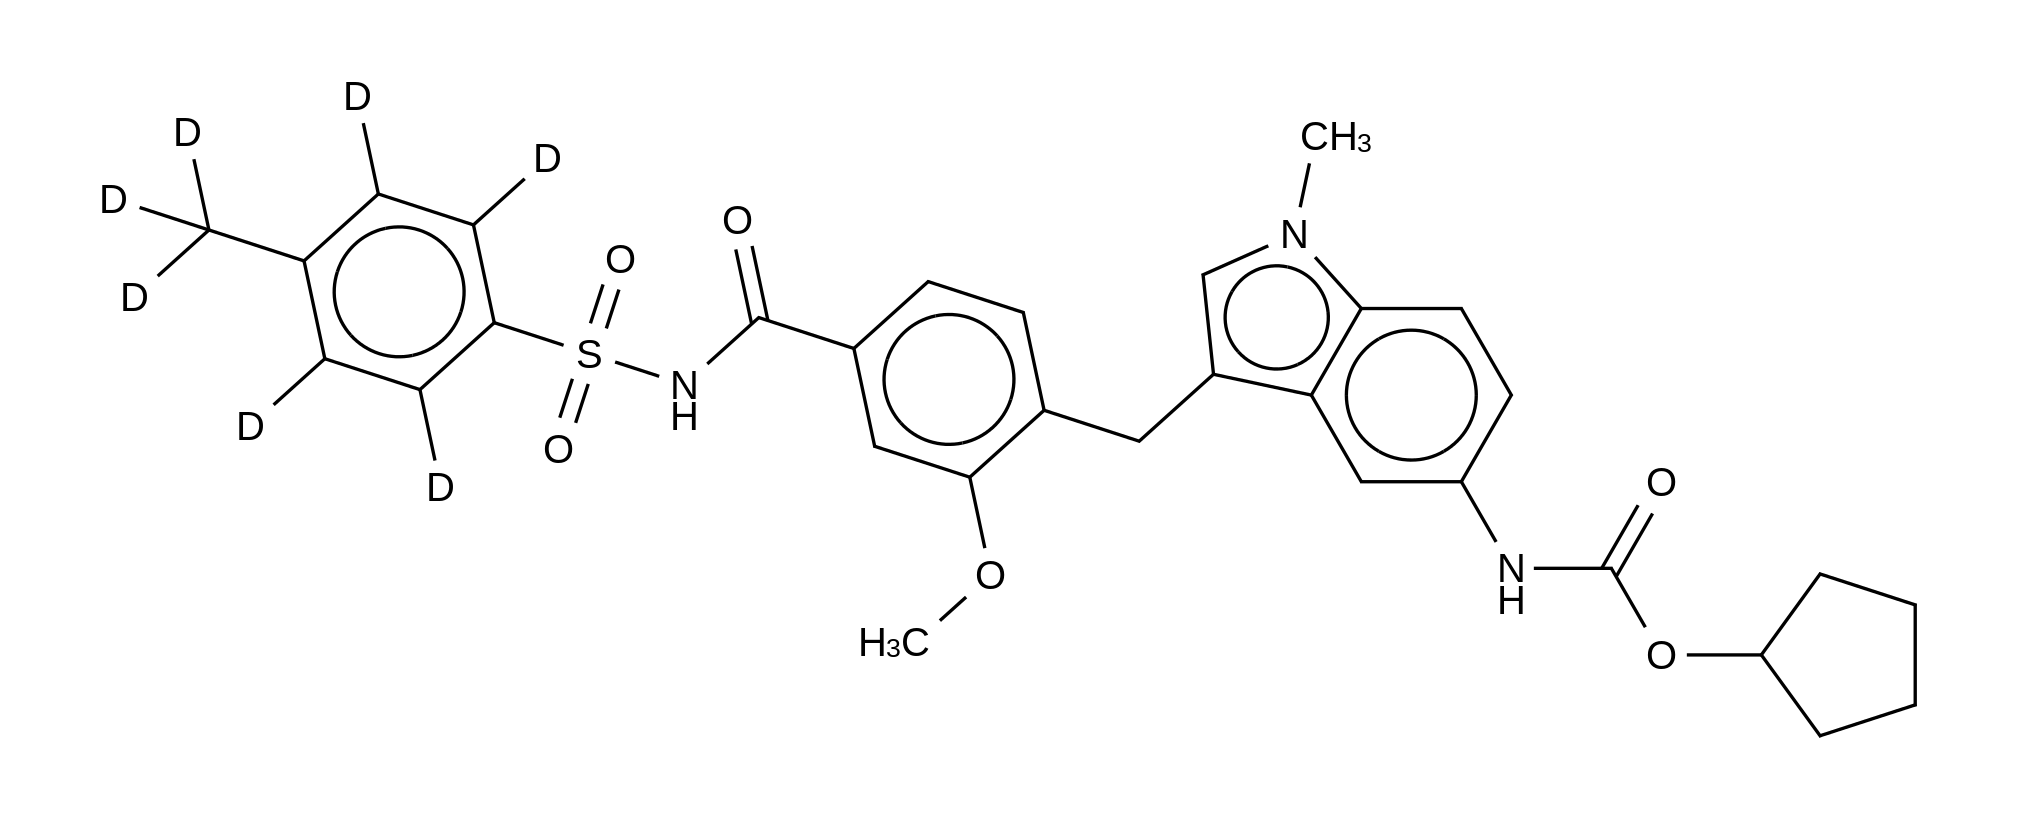 Zafirlukast p-Tolyl Isomer-d<sub>7</sub>